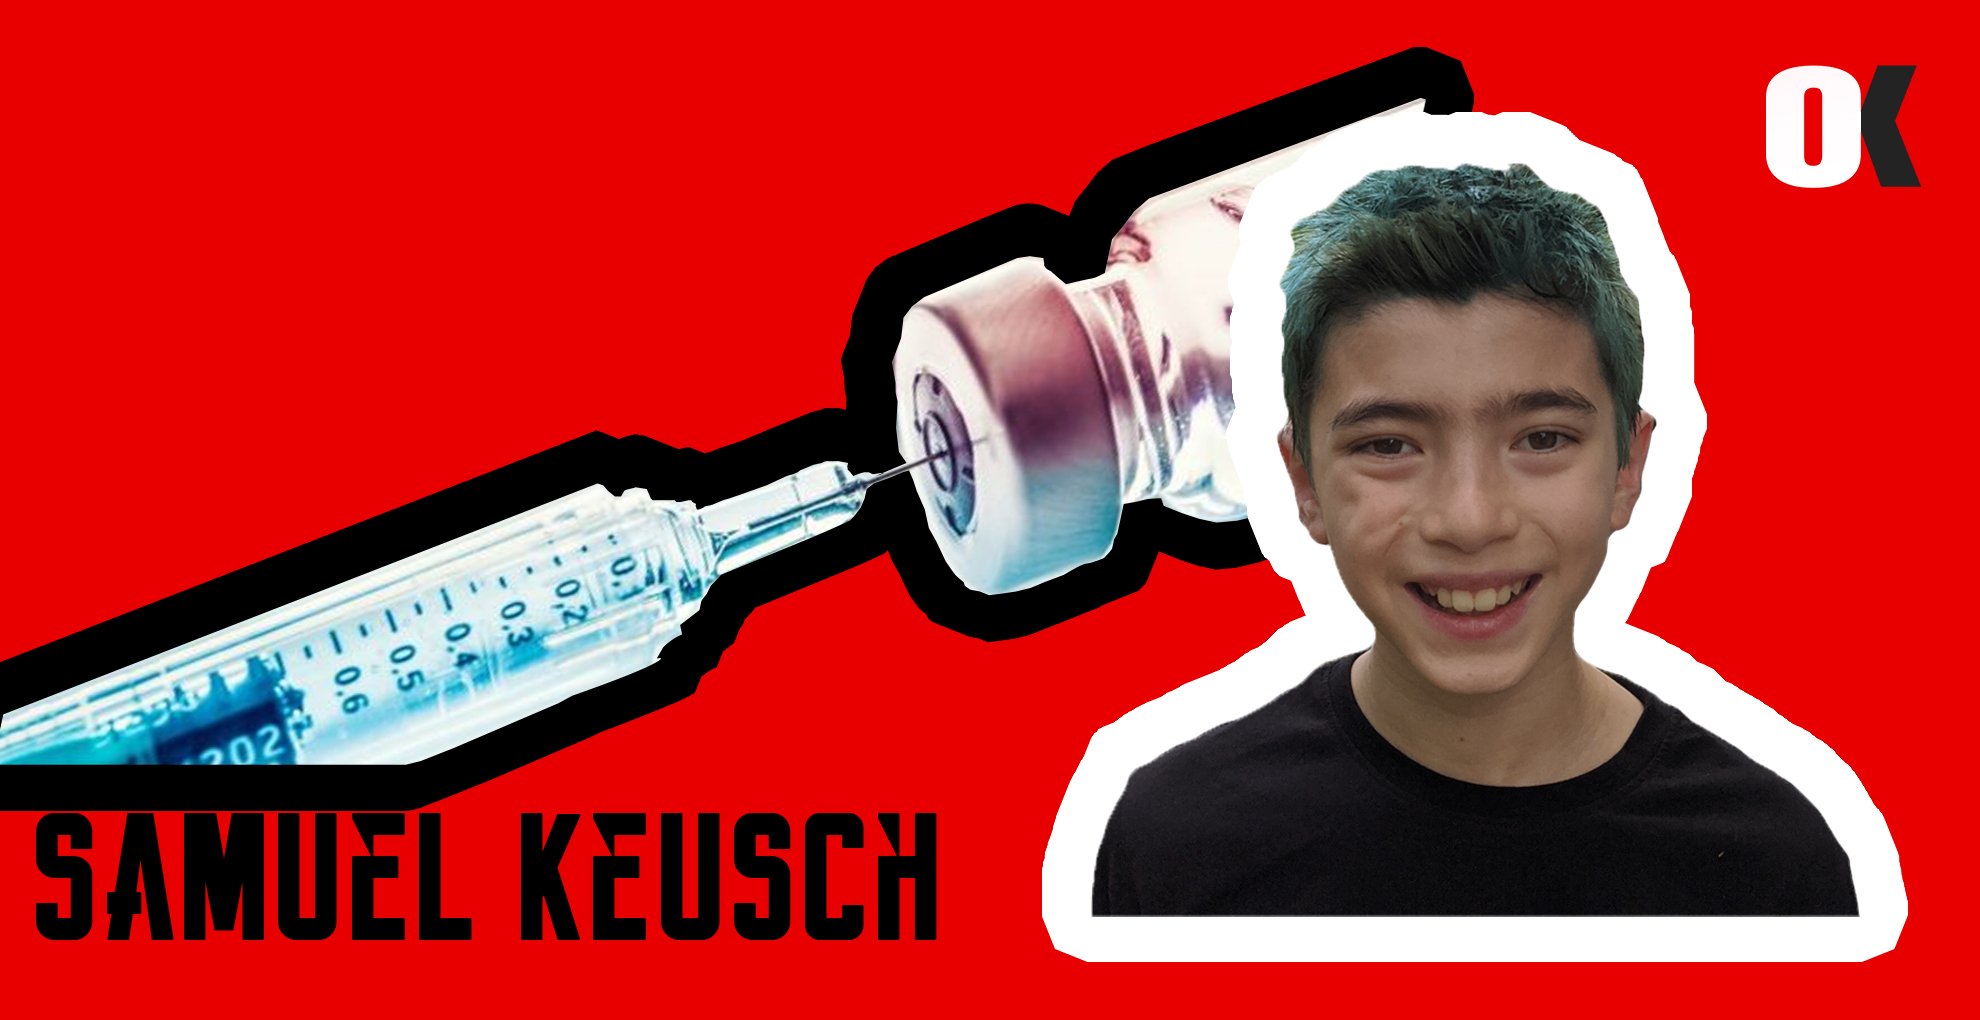 12 Yaşındaki  Aşı Yardımcısı  ”Samuel Keusch” i Tanıyor musunuz ?